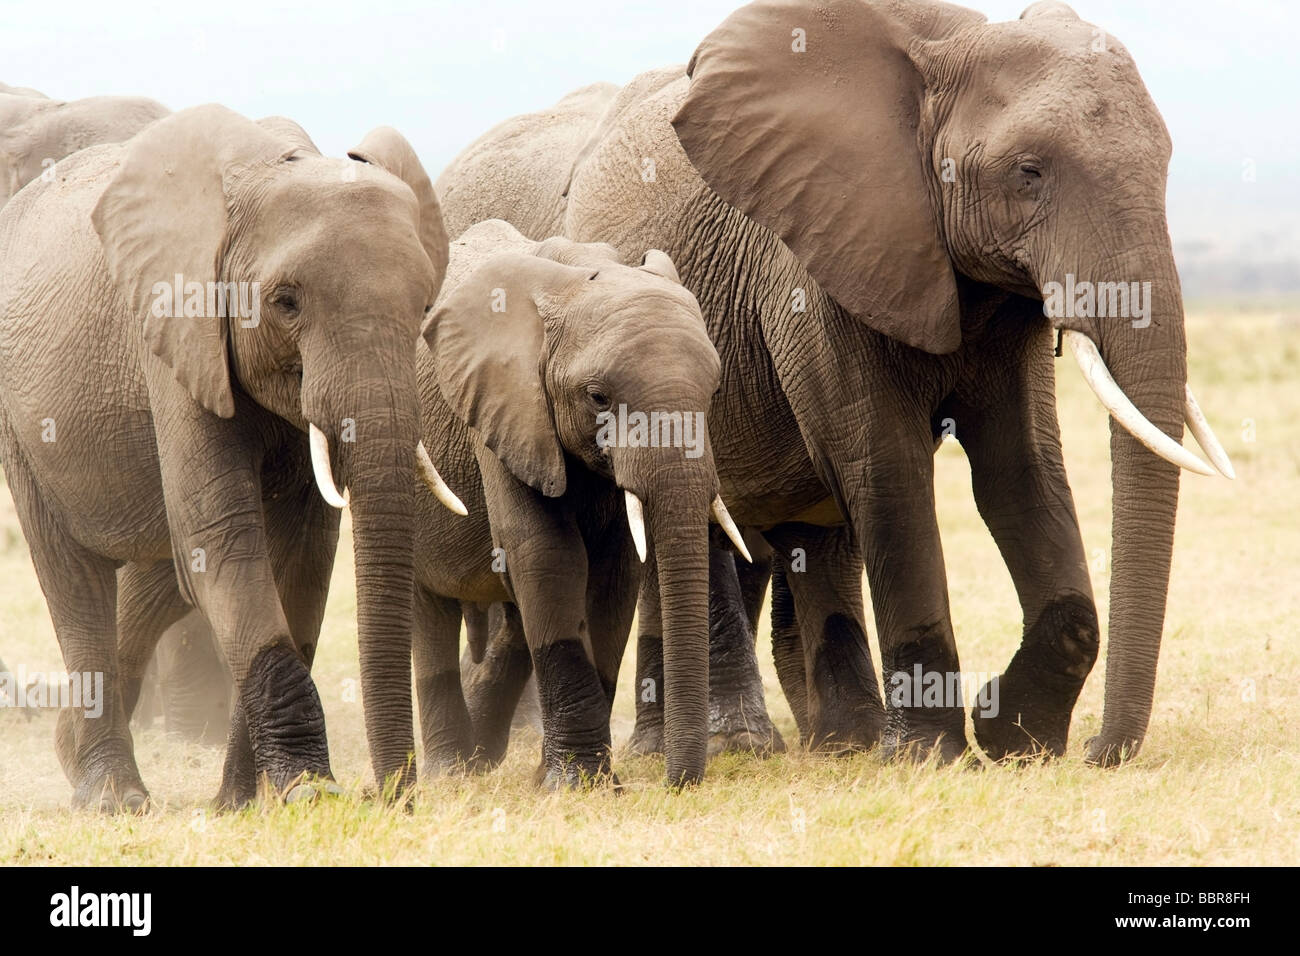 Groupe d'éléphants marchant sur plaines poussiéreuses - Parc National d'Amboseli, Kenya Banque D'Images